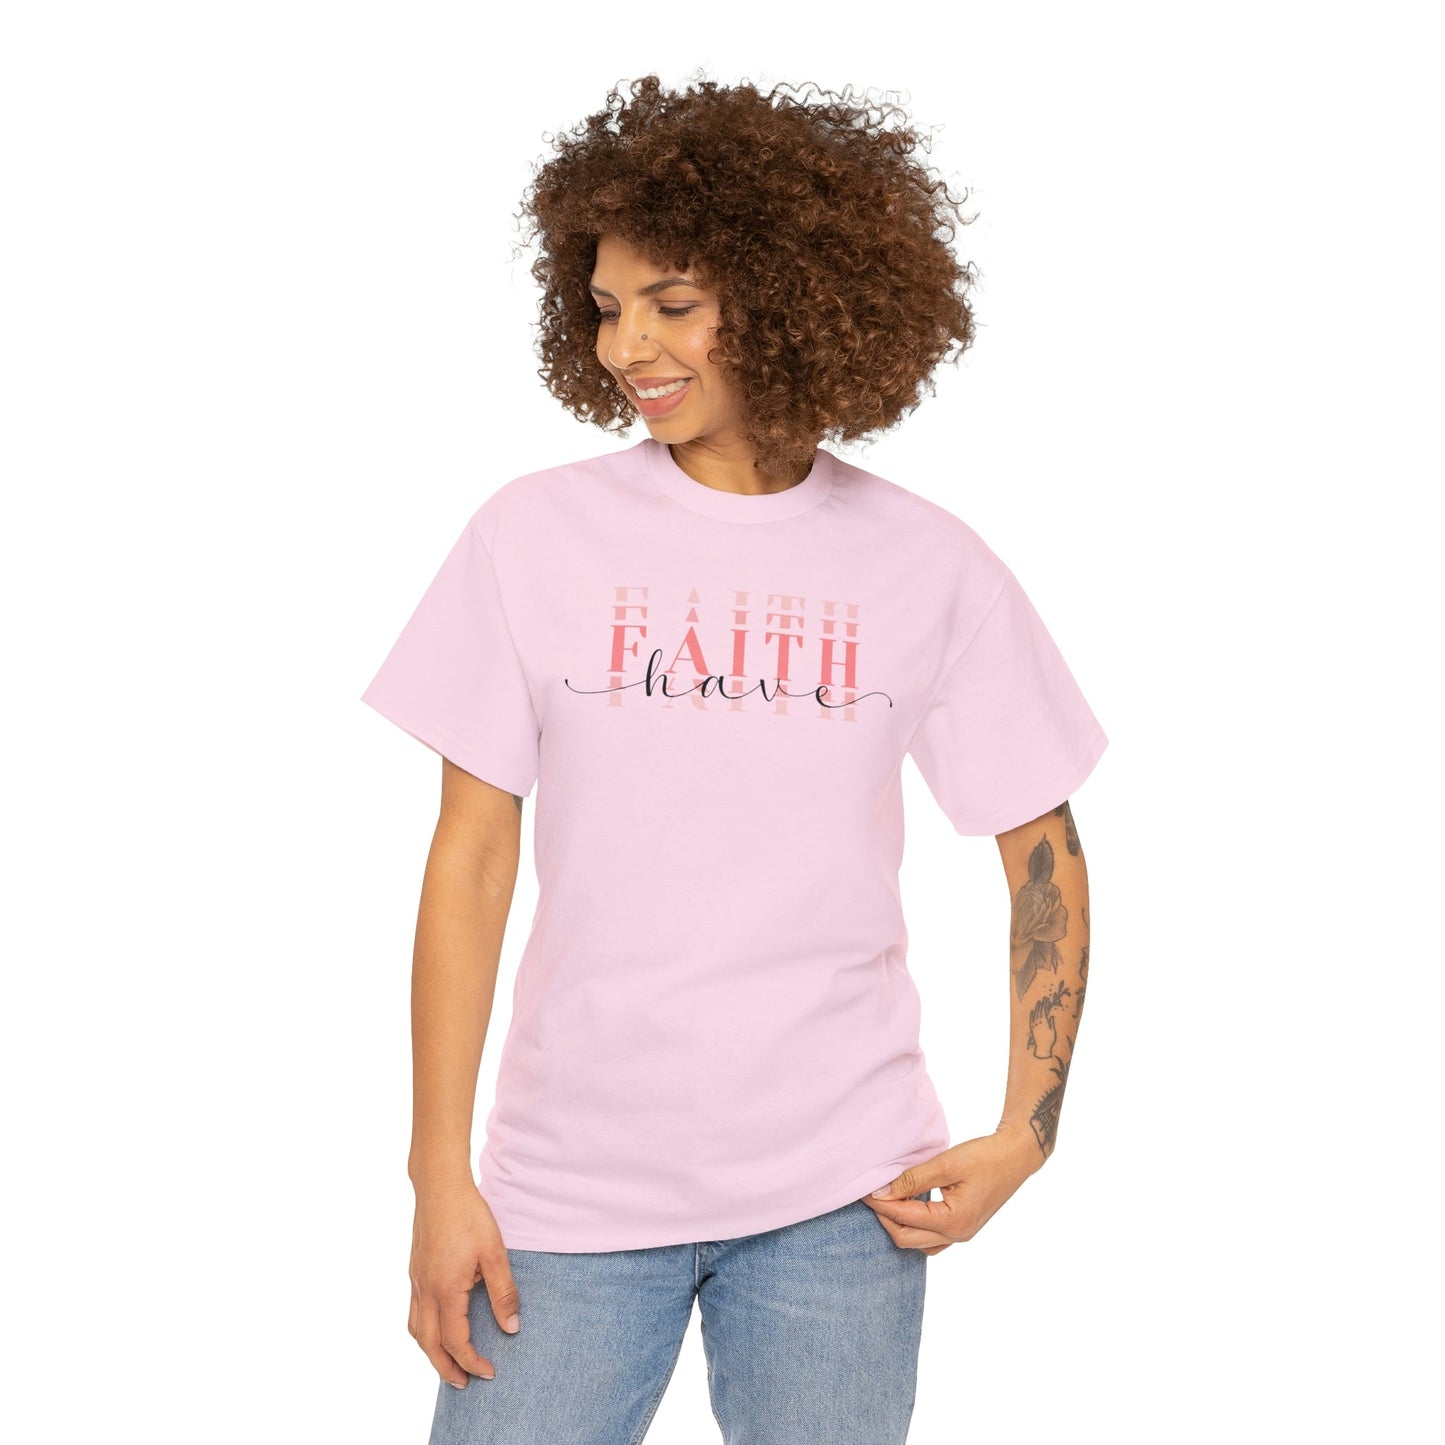 Have Faith Short Sleeve Cotton T-Shirt - numonet